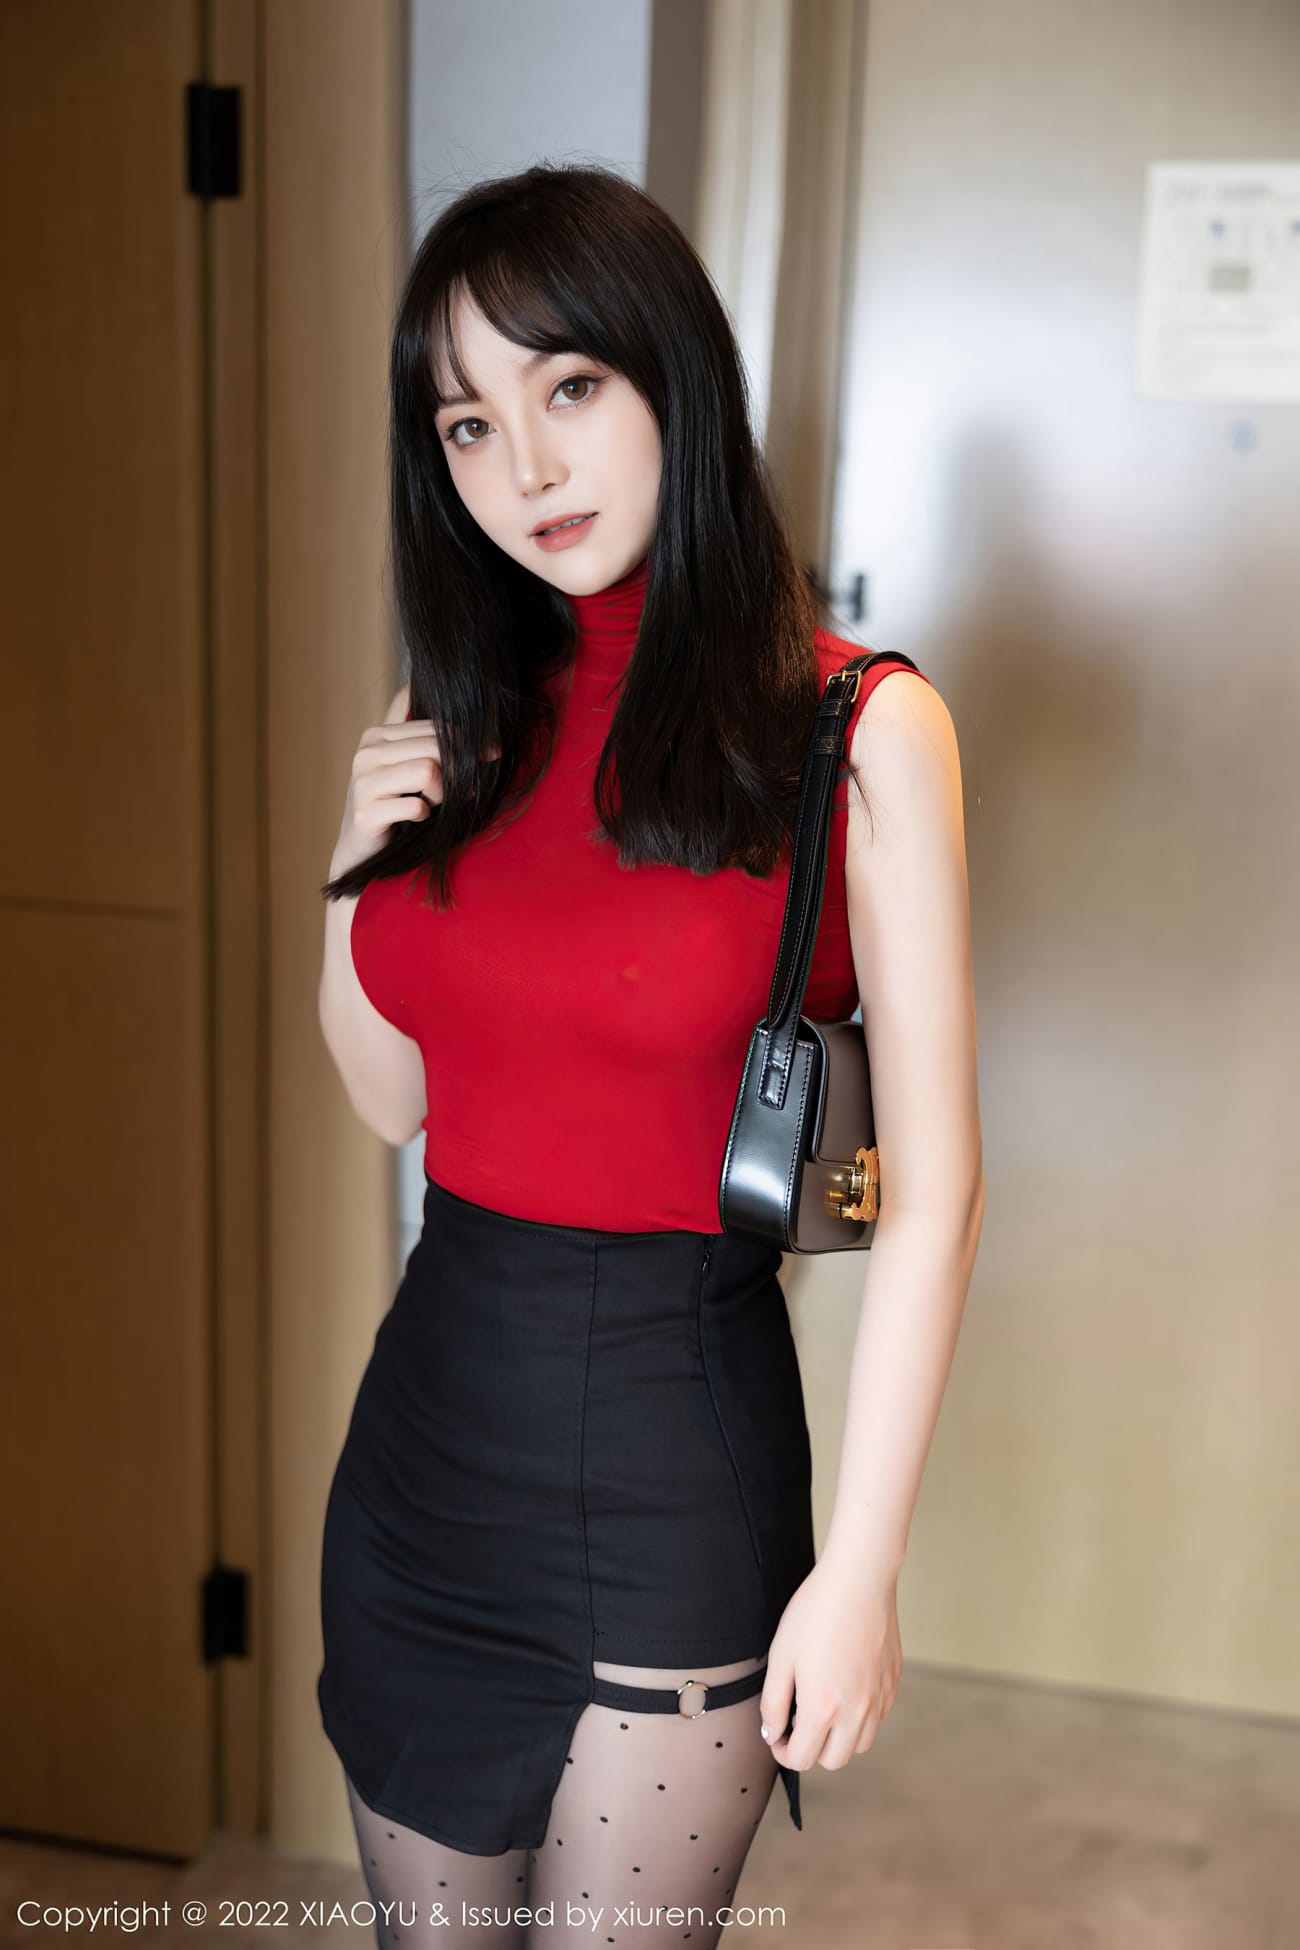 模特豆瓣酱 - 红色上衣+黑色短裙性感写真